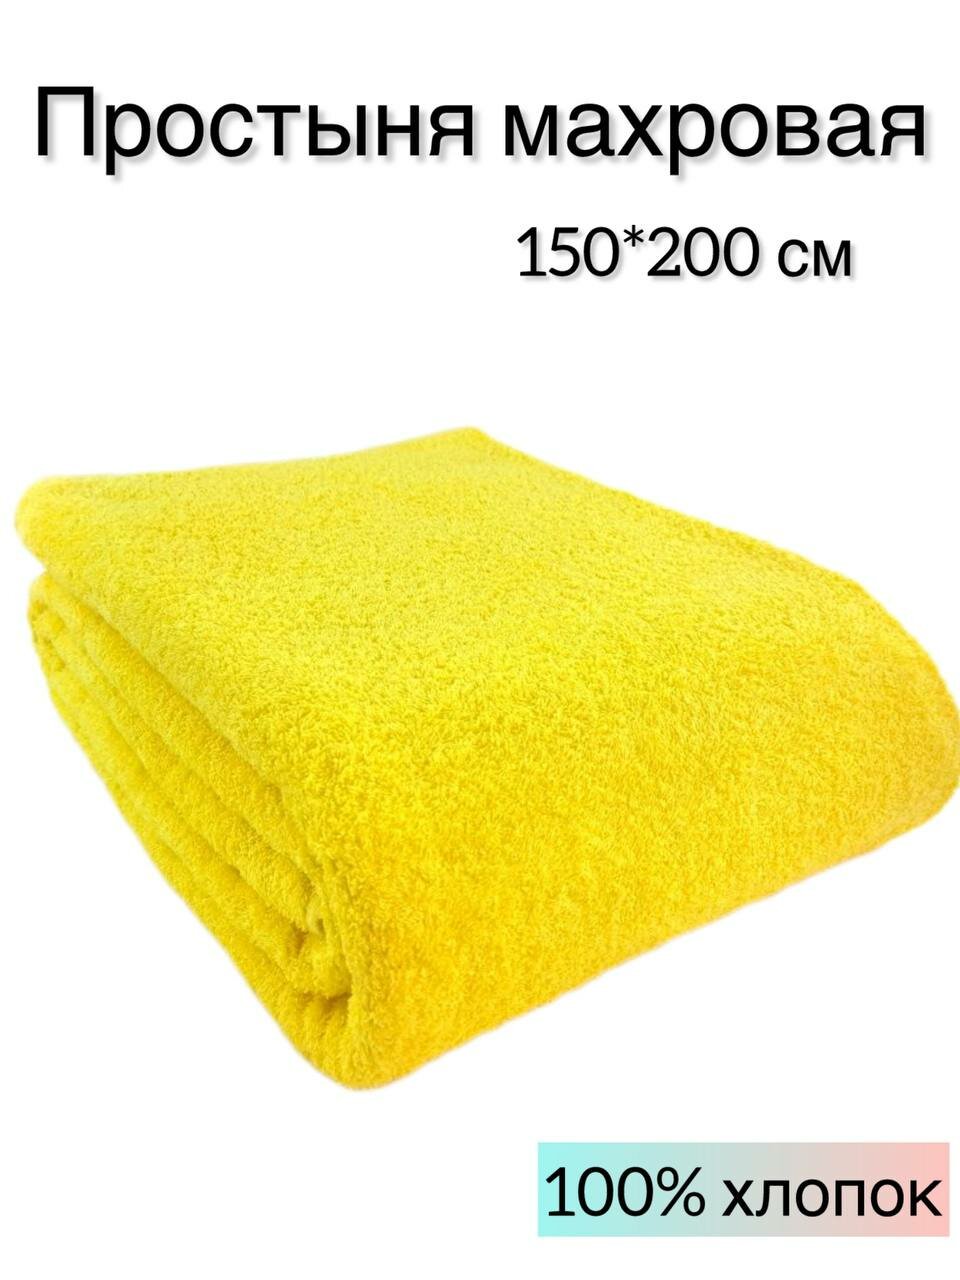 Покрывало махровое 150x200 см, одеяло махровое, пляжное полотенце, плед, покрывало, цвет: желтый